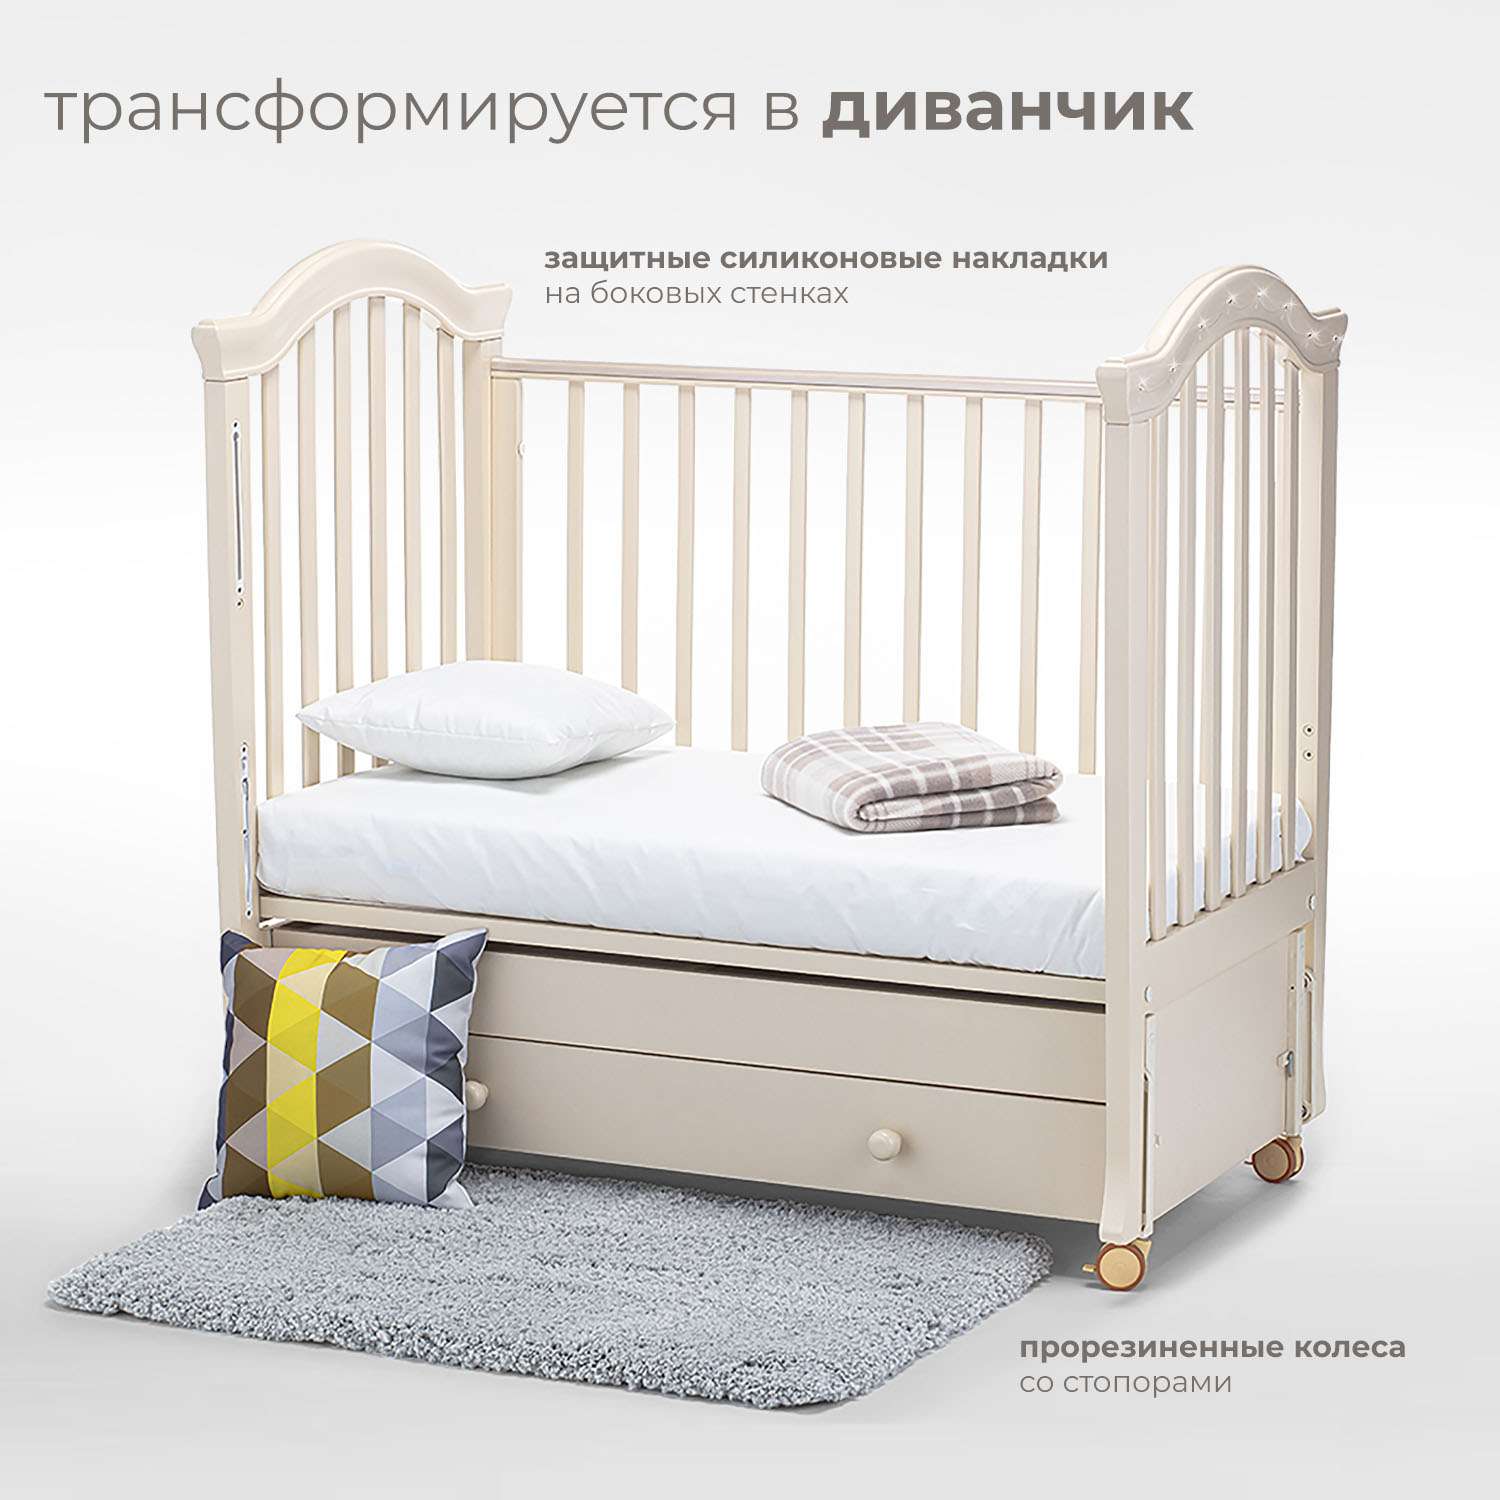 Детская кроватка Nuovita Perla Swing прямоугольная, продольный маятник (слоновая кость) - фото 5